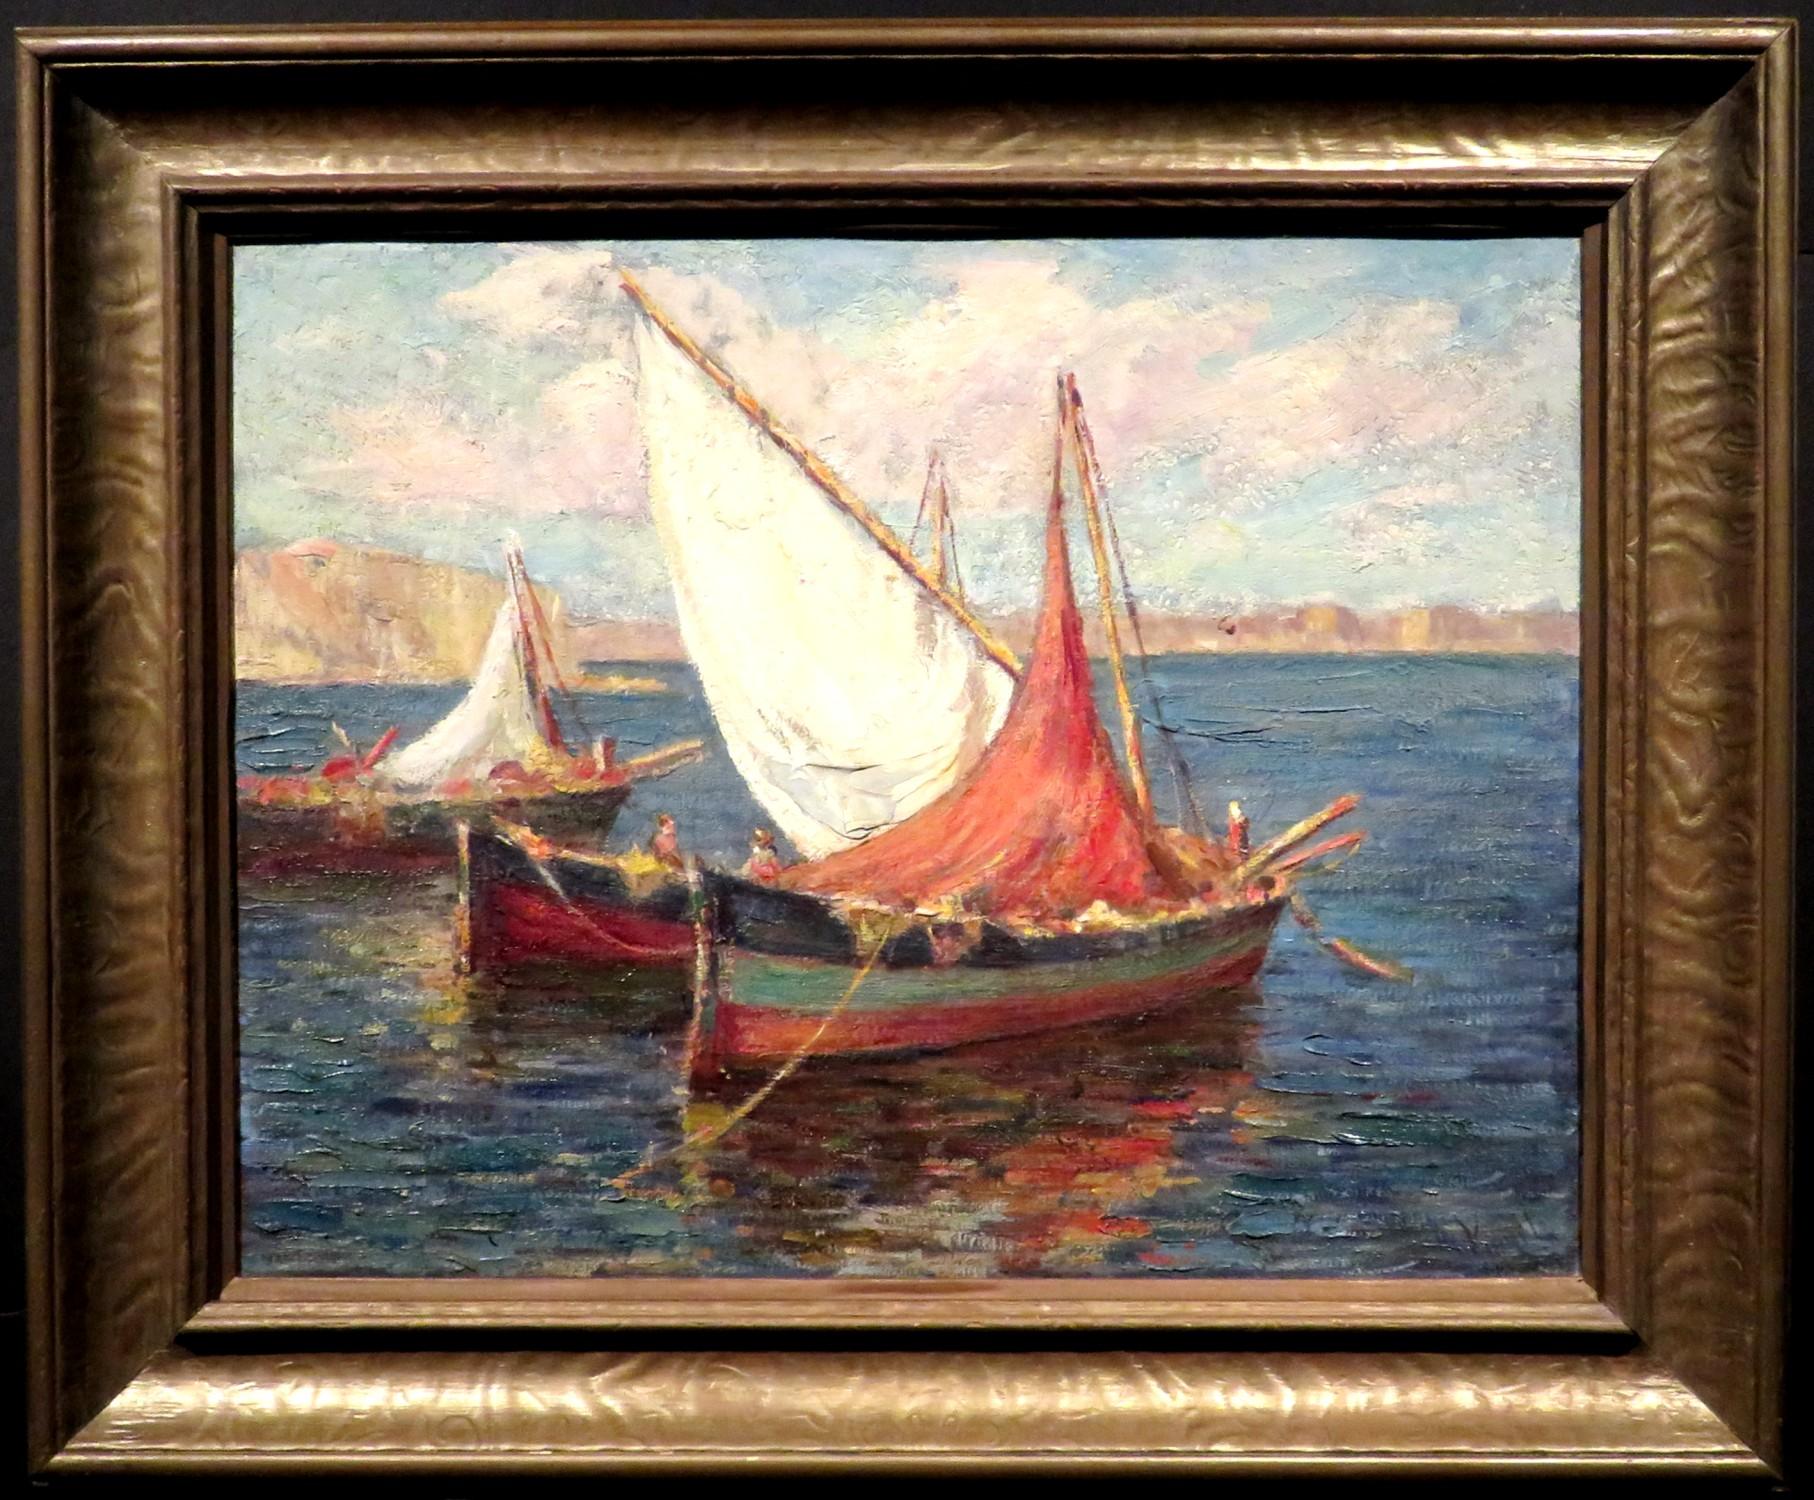 Eine charmante impressionistische Küstenansicht aus dem frühen 20. Jahrhundert mit Fischerbooten vor der Mittelmeerküste. 
Öl auf Leinwand, rechts unten undeutlich signiert. 
Das Bild befindet sich in einem Rahmen aus patiniertem Holz und Gesso, der